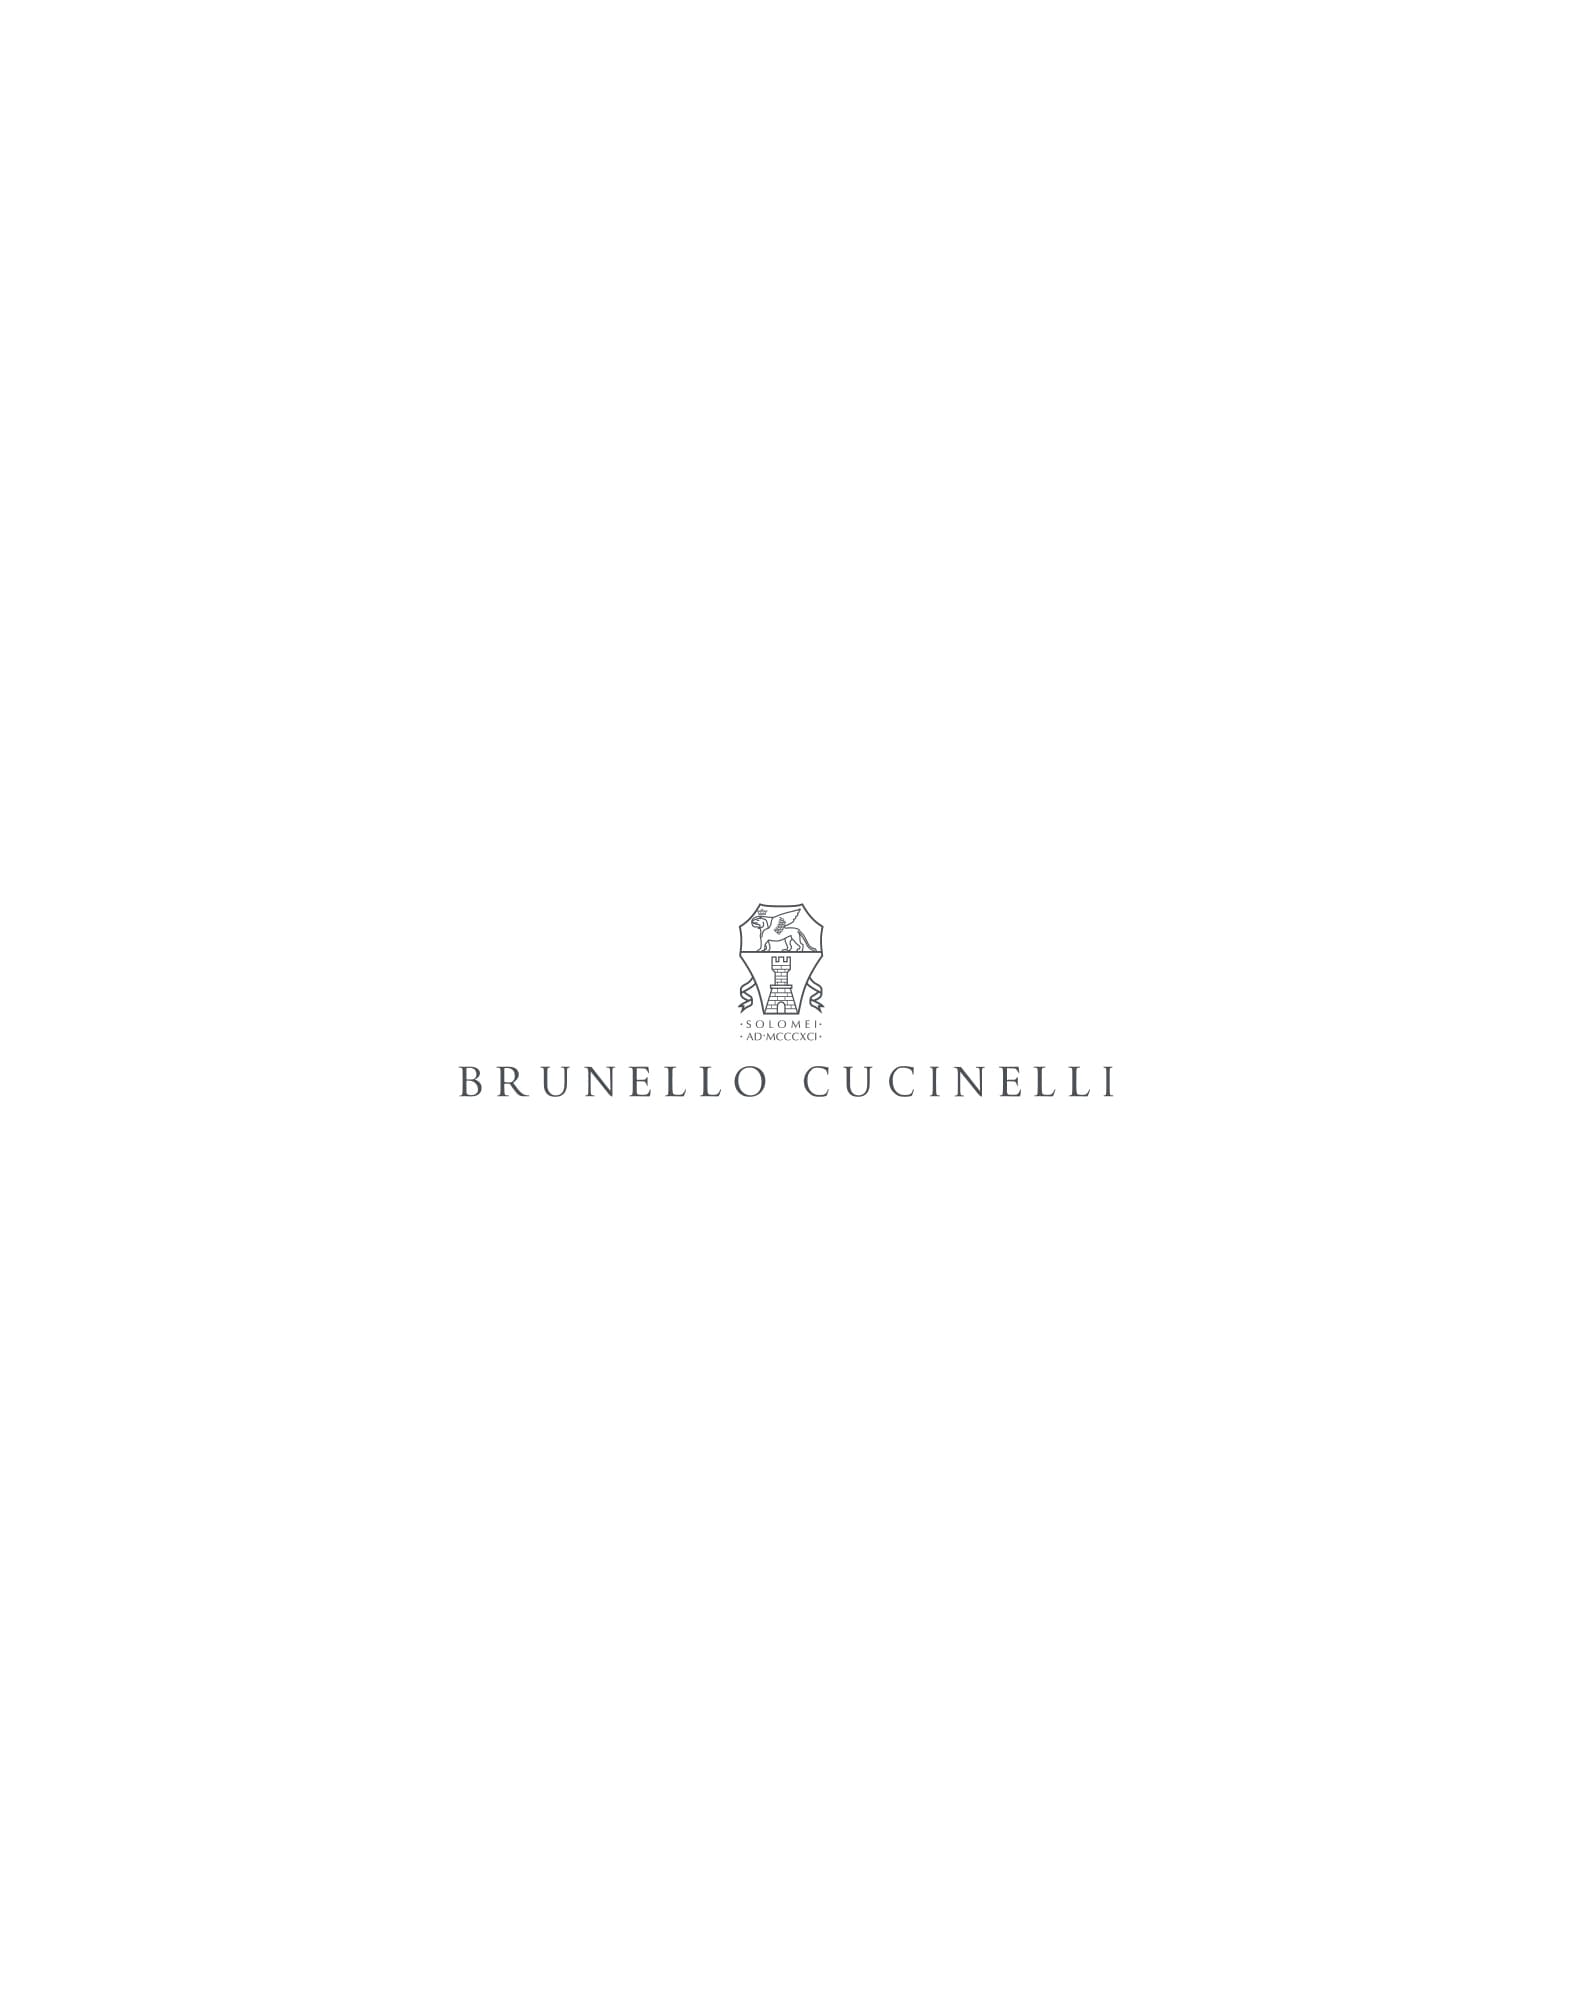 Calfskin belt Chestnut Man - Brunello Cucinelli 